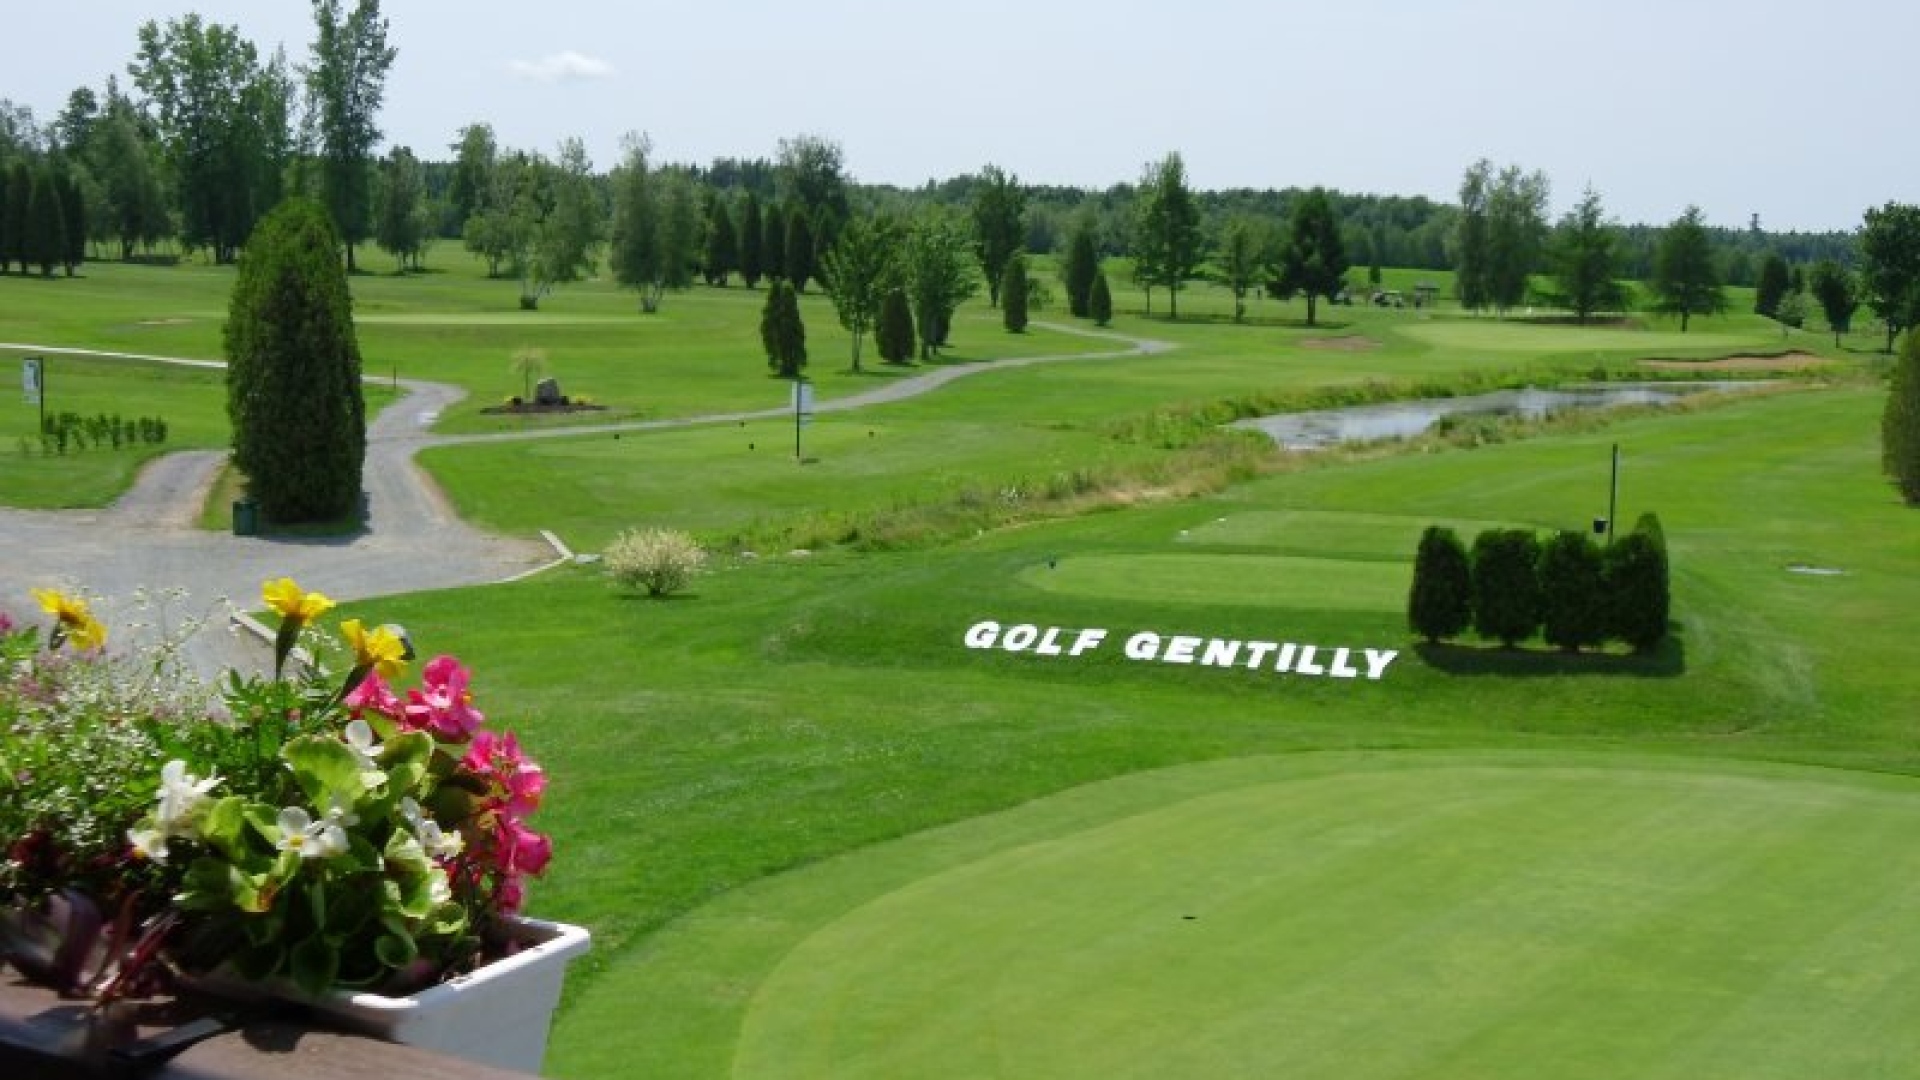 Le Club de golf de Gentilly compte désormais sur un neuf trous.